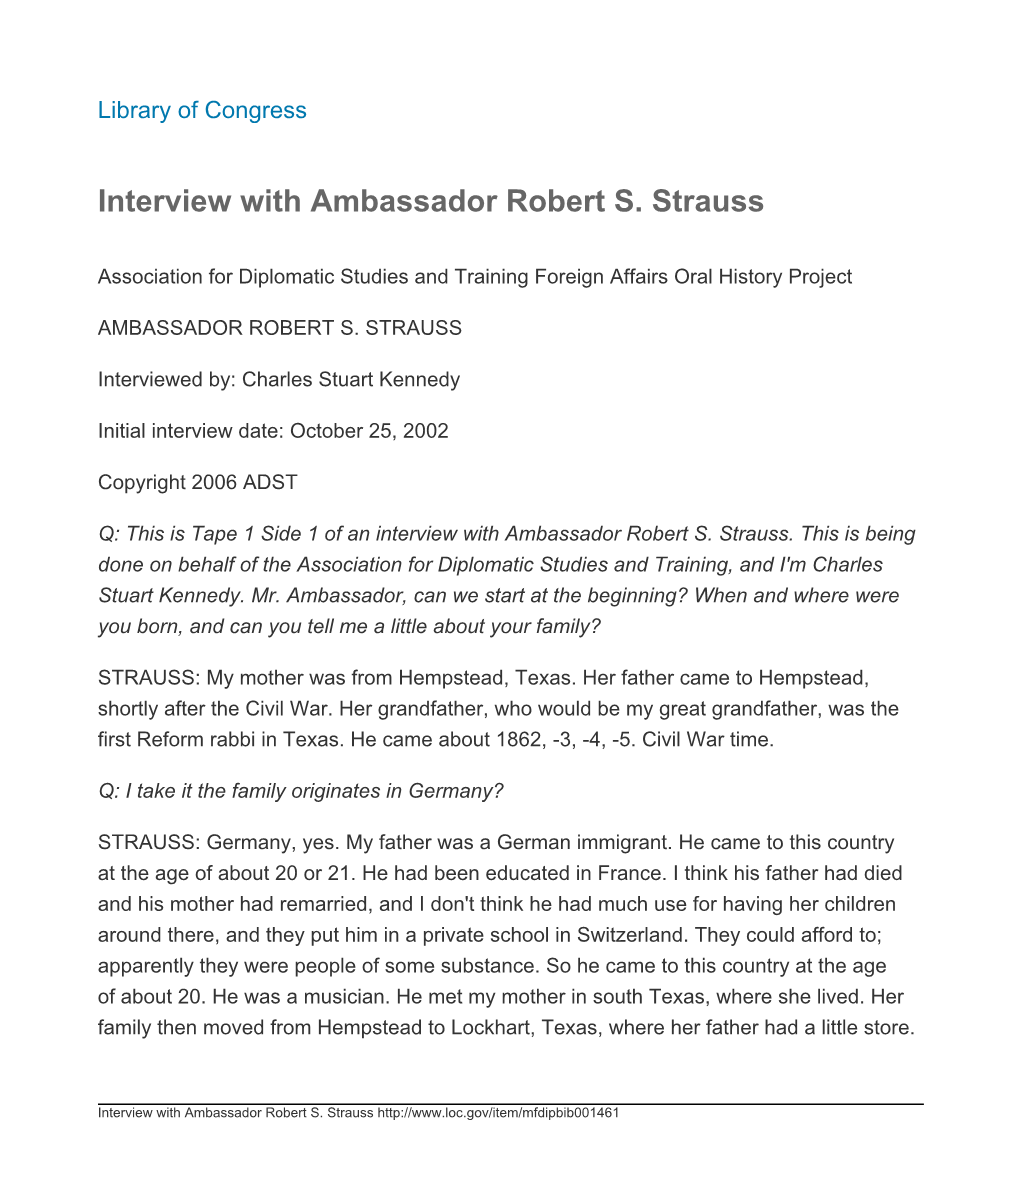 Interview with Ambassador Robert S. Strauss